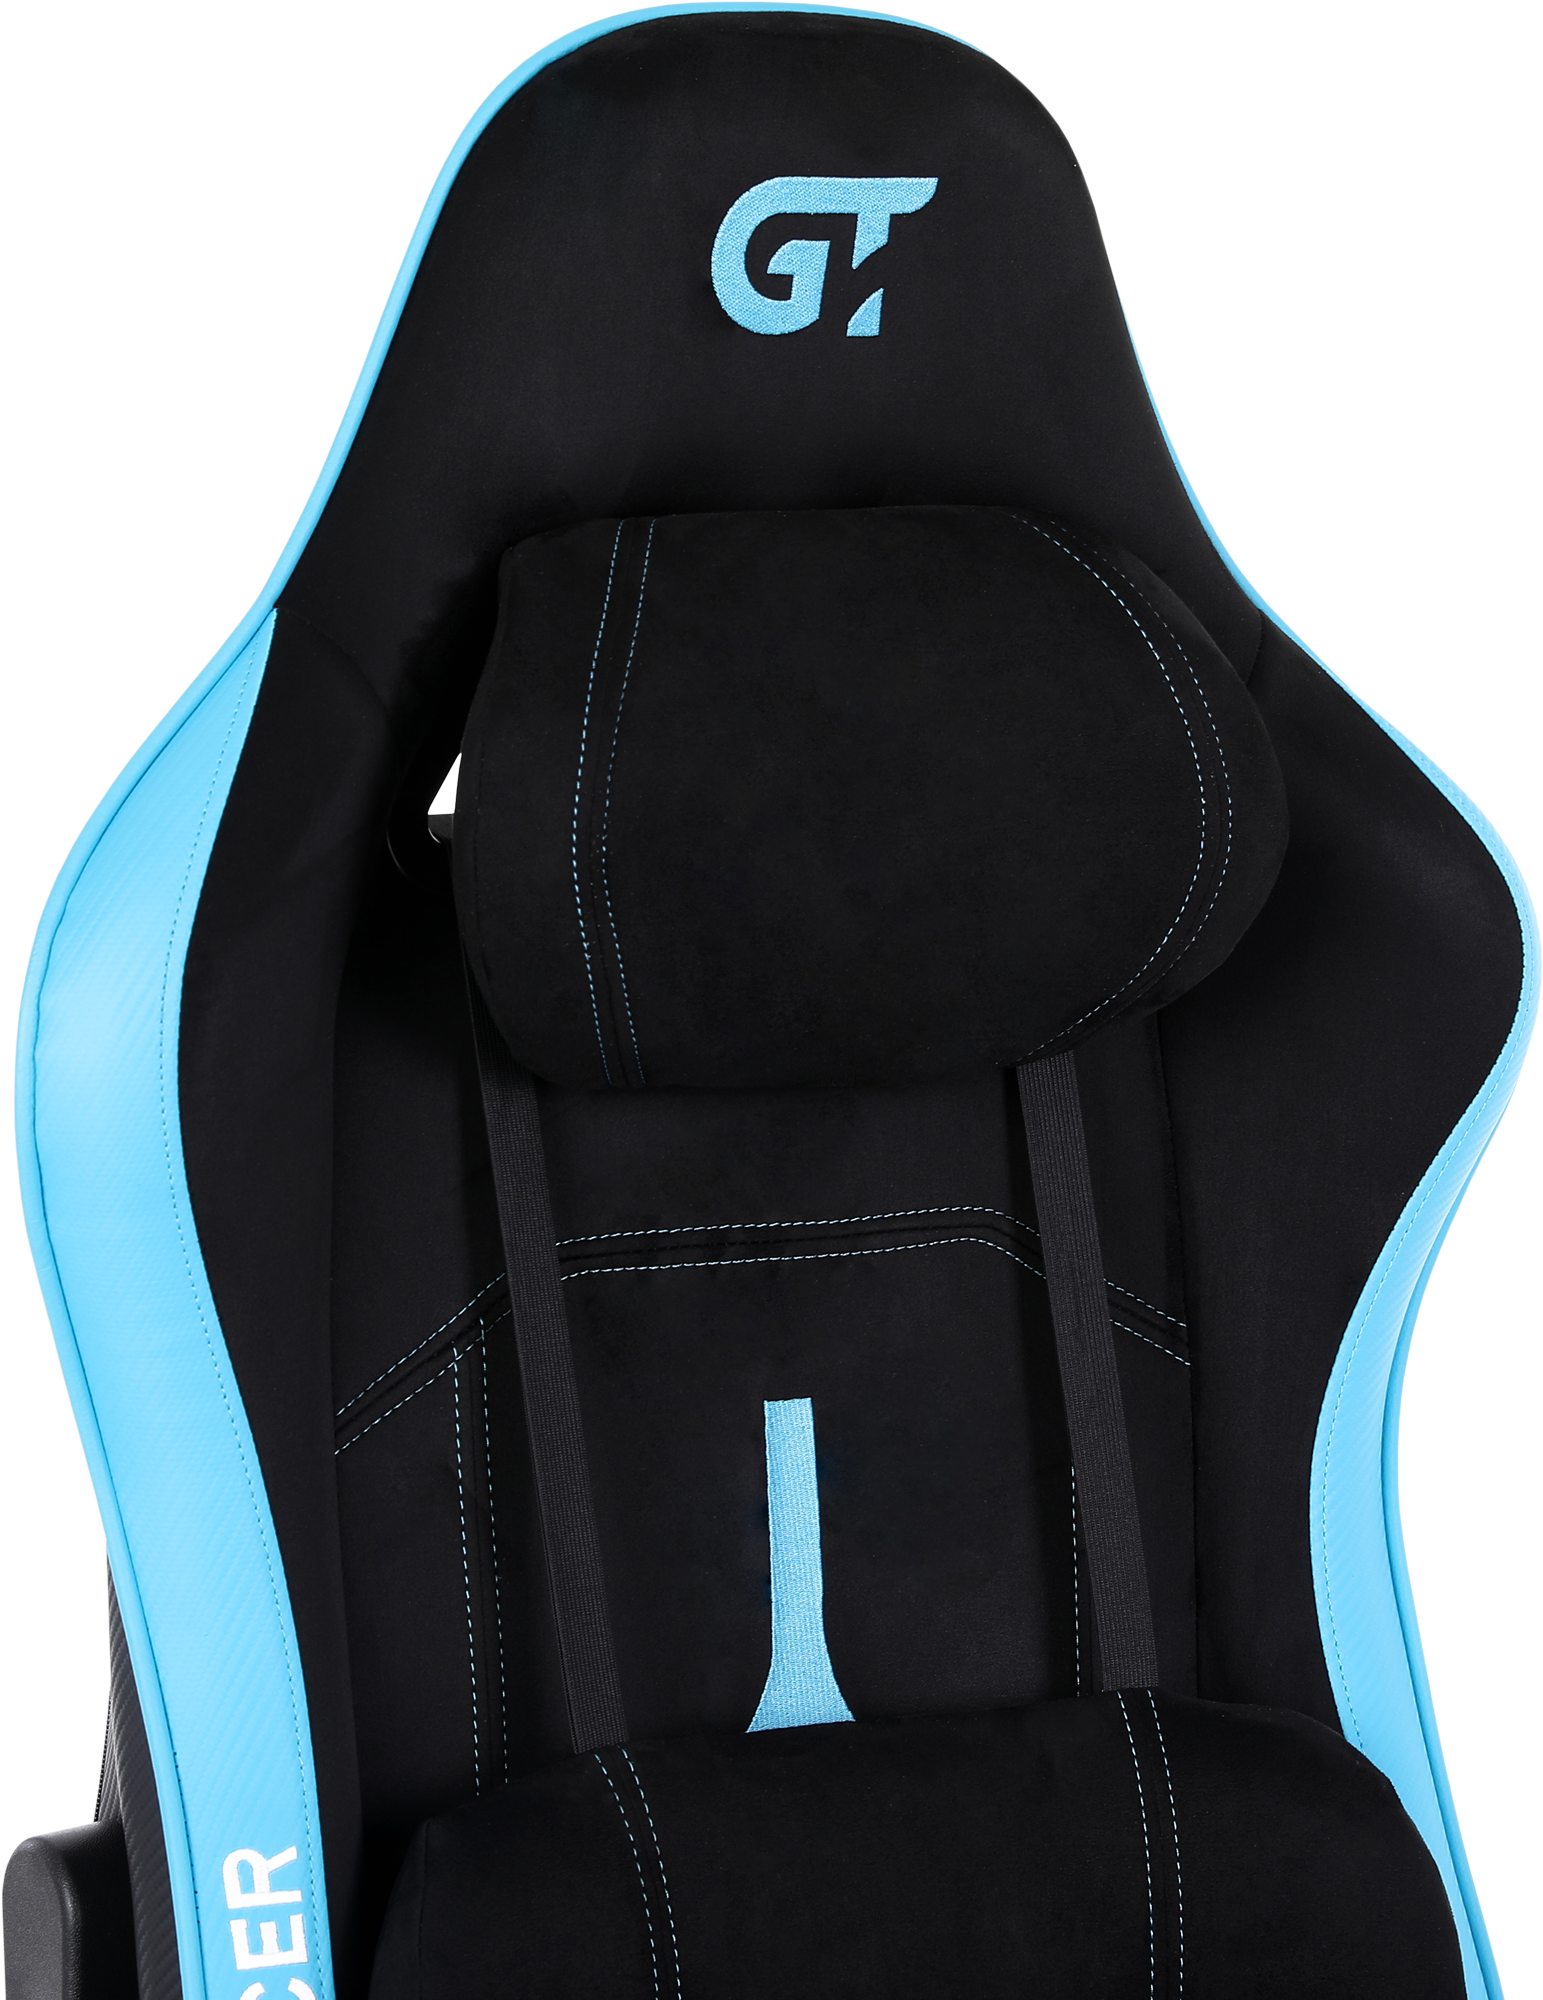 Геймерское кресло GT Racer черное с синим (X-2565 Black/Blue) - фото 8